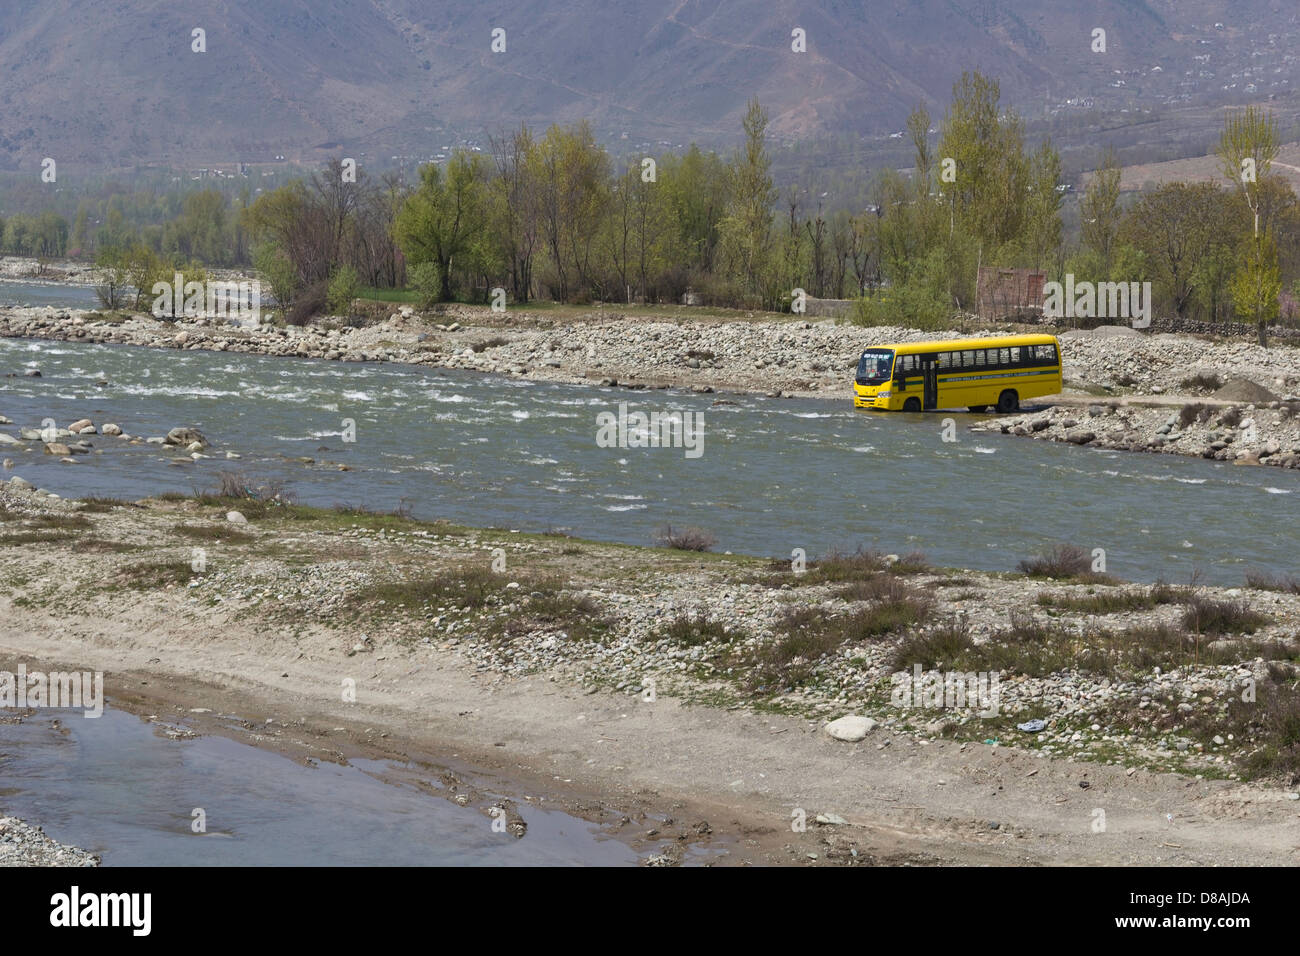 School bus dans un ruisseau de montagne dans la banlieue de Srinagar, au Cachemire, en Inde, en cours de nettoyage. L'arrière-plan sont les arbres et mur de pierre Banque D'Images